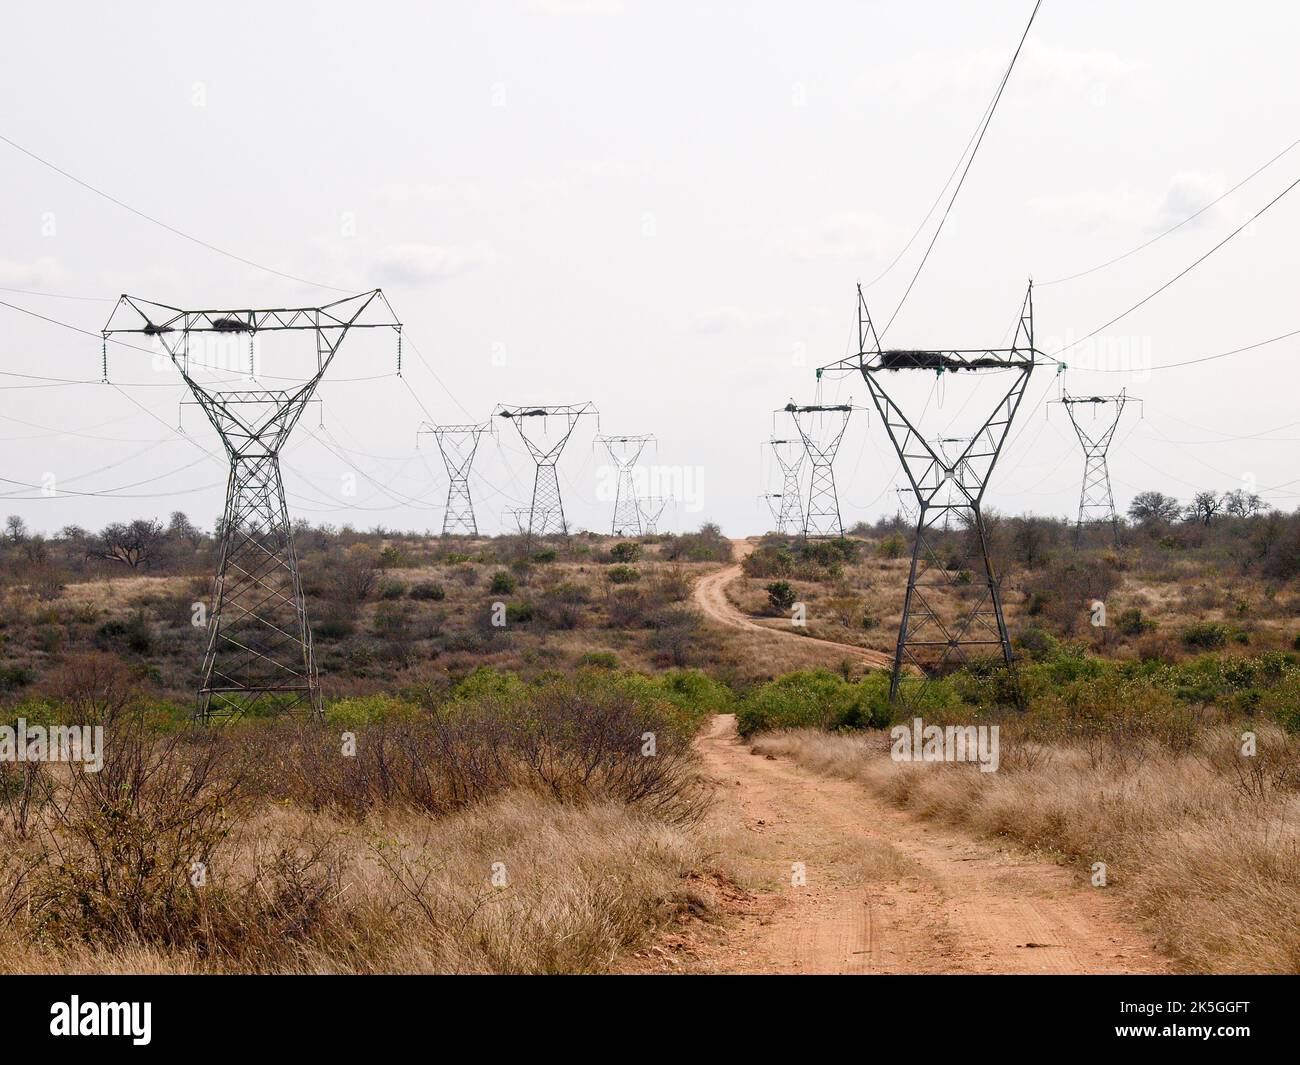 Elektrische Kabelmasten, die durch den afrikanischen Busch marschieren, mit einer kurvenreichen Buschstraße darunter. Stockfoto